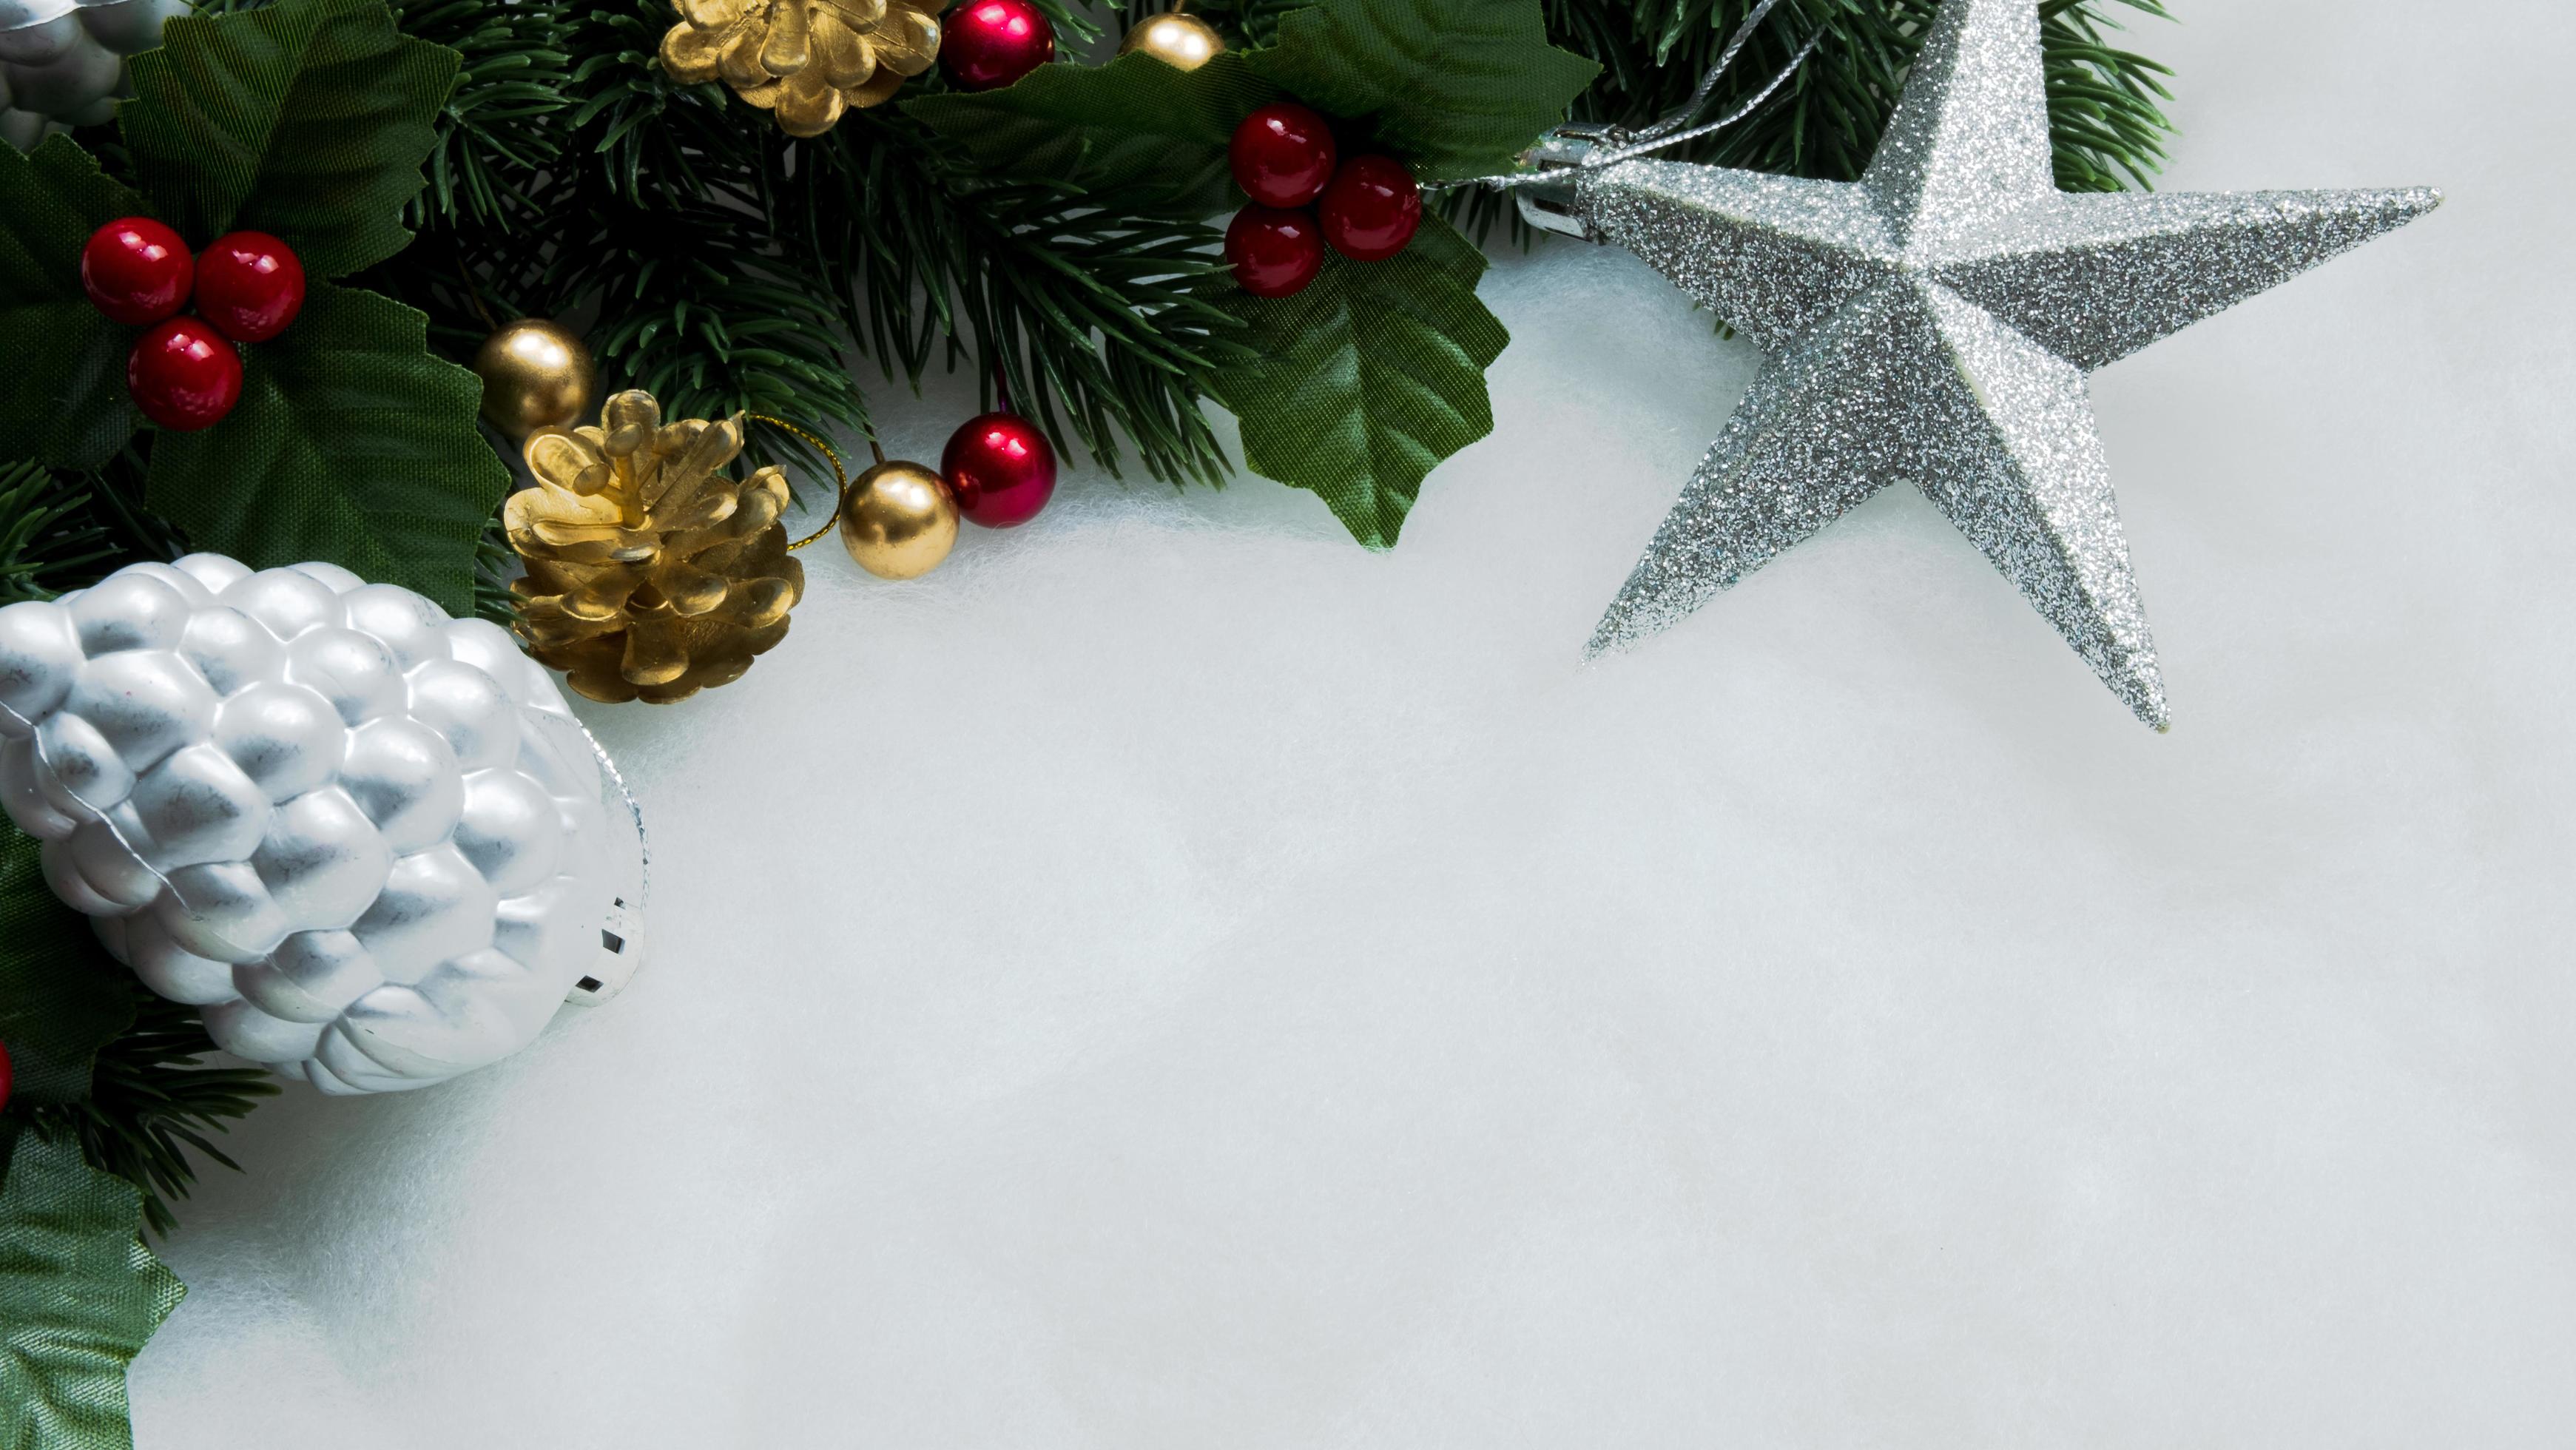 Trang trí Giáng sinh: Quà Giáng sinh sắp đến và không có gì tuyệt vời hơn khi trang trí ngôi nhà của bạn với những đồ trang trí Giáng sinh đầy màu sắc. Hãy xem hình ảnh liên quan để có thêm ý tưởng và đón Giáng sinh trong không gian lung linh, ấm cúng và đầy niềm vui.